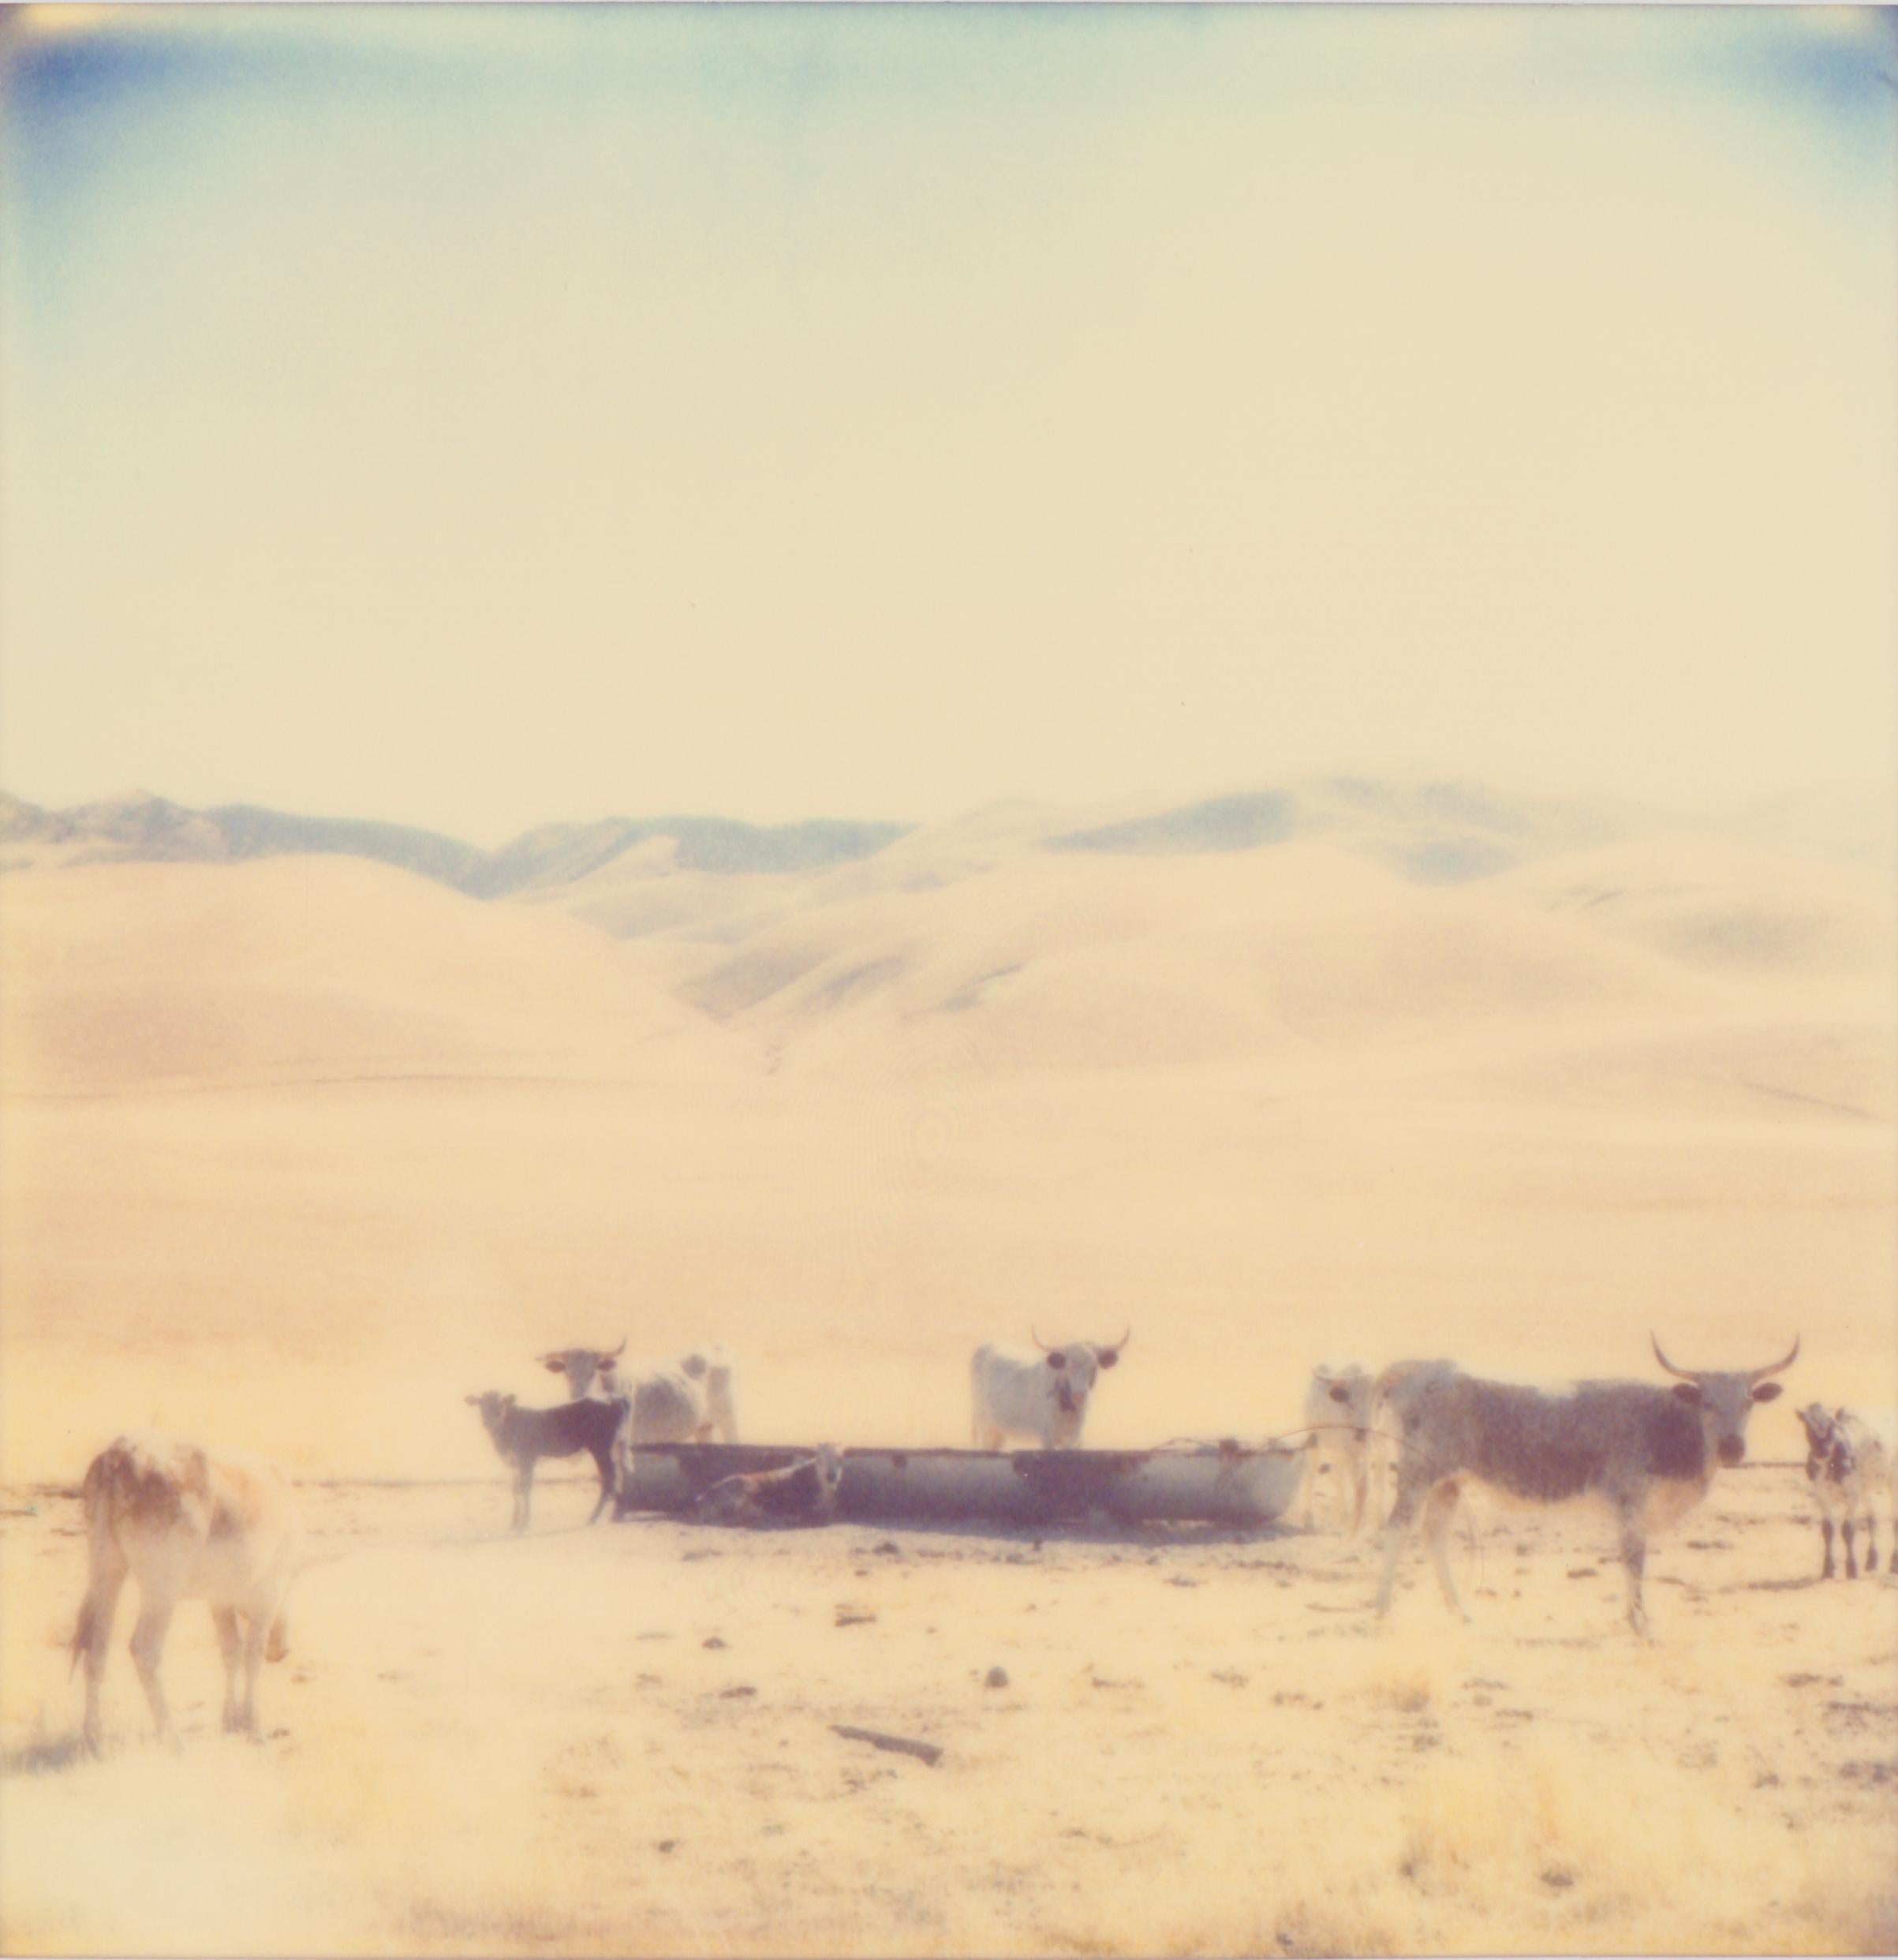 Oilfields, diptych - mounted - Polaroid, Contemporary, Portrait, Landscape - Photograph by Stefanie Schneider